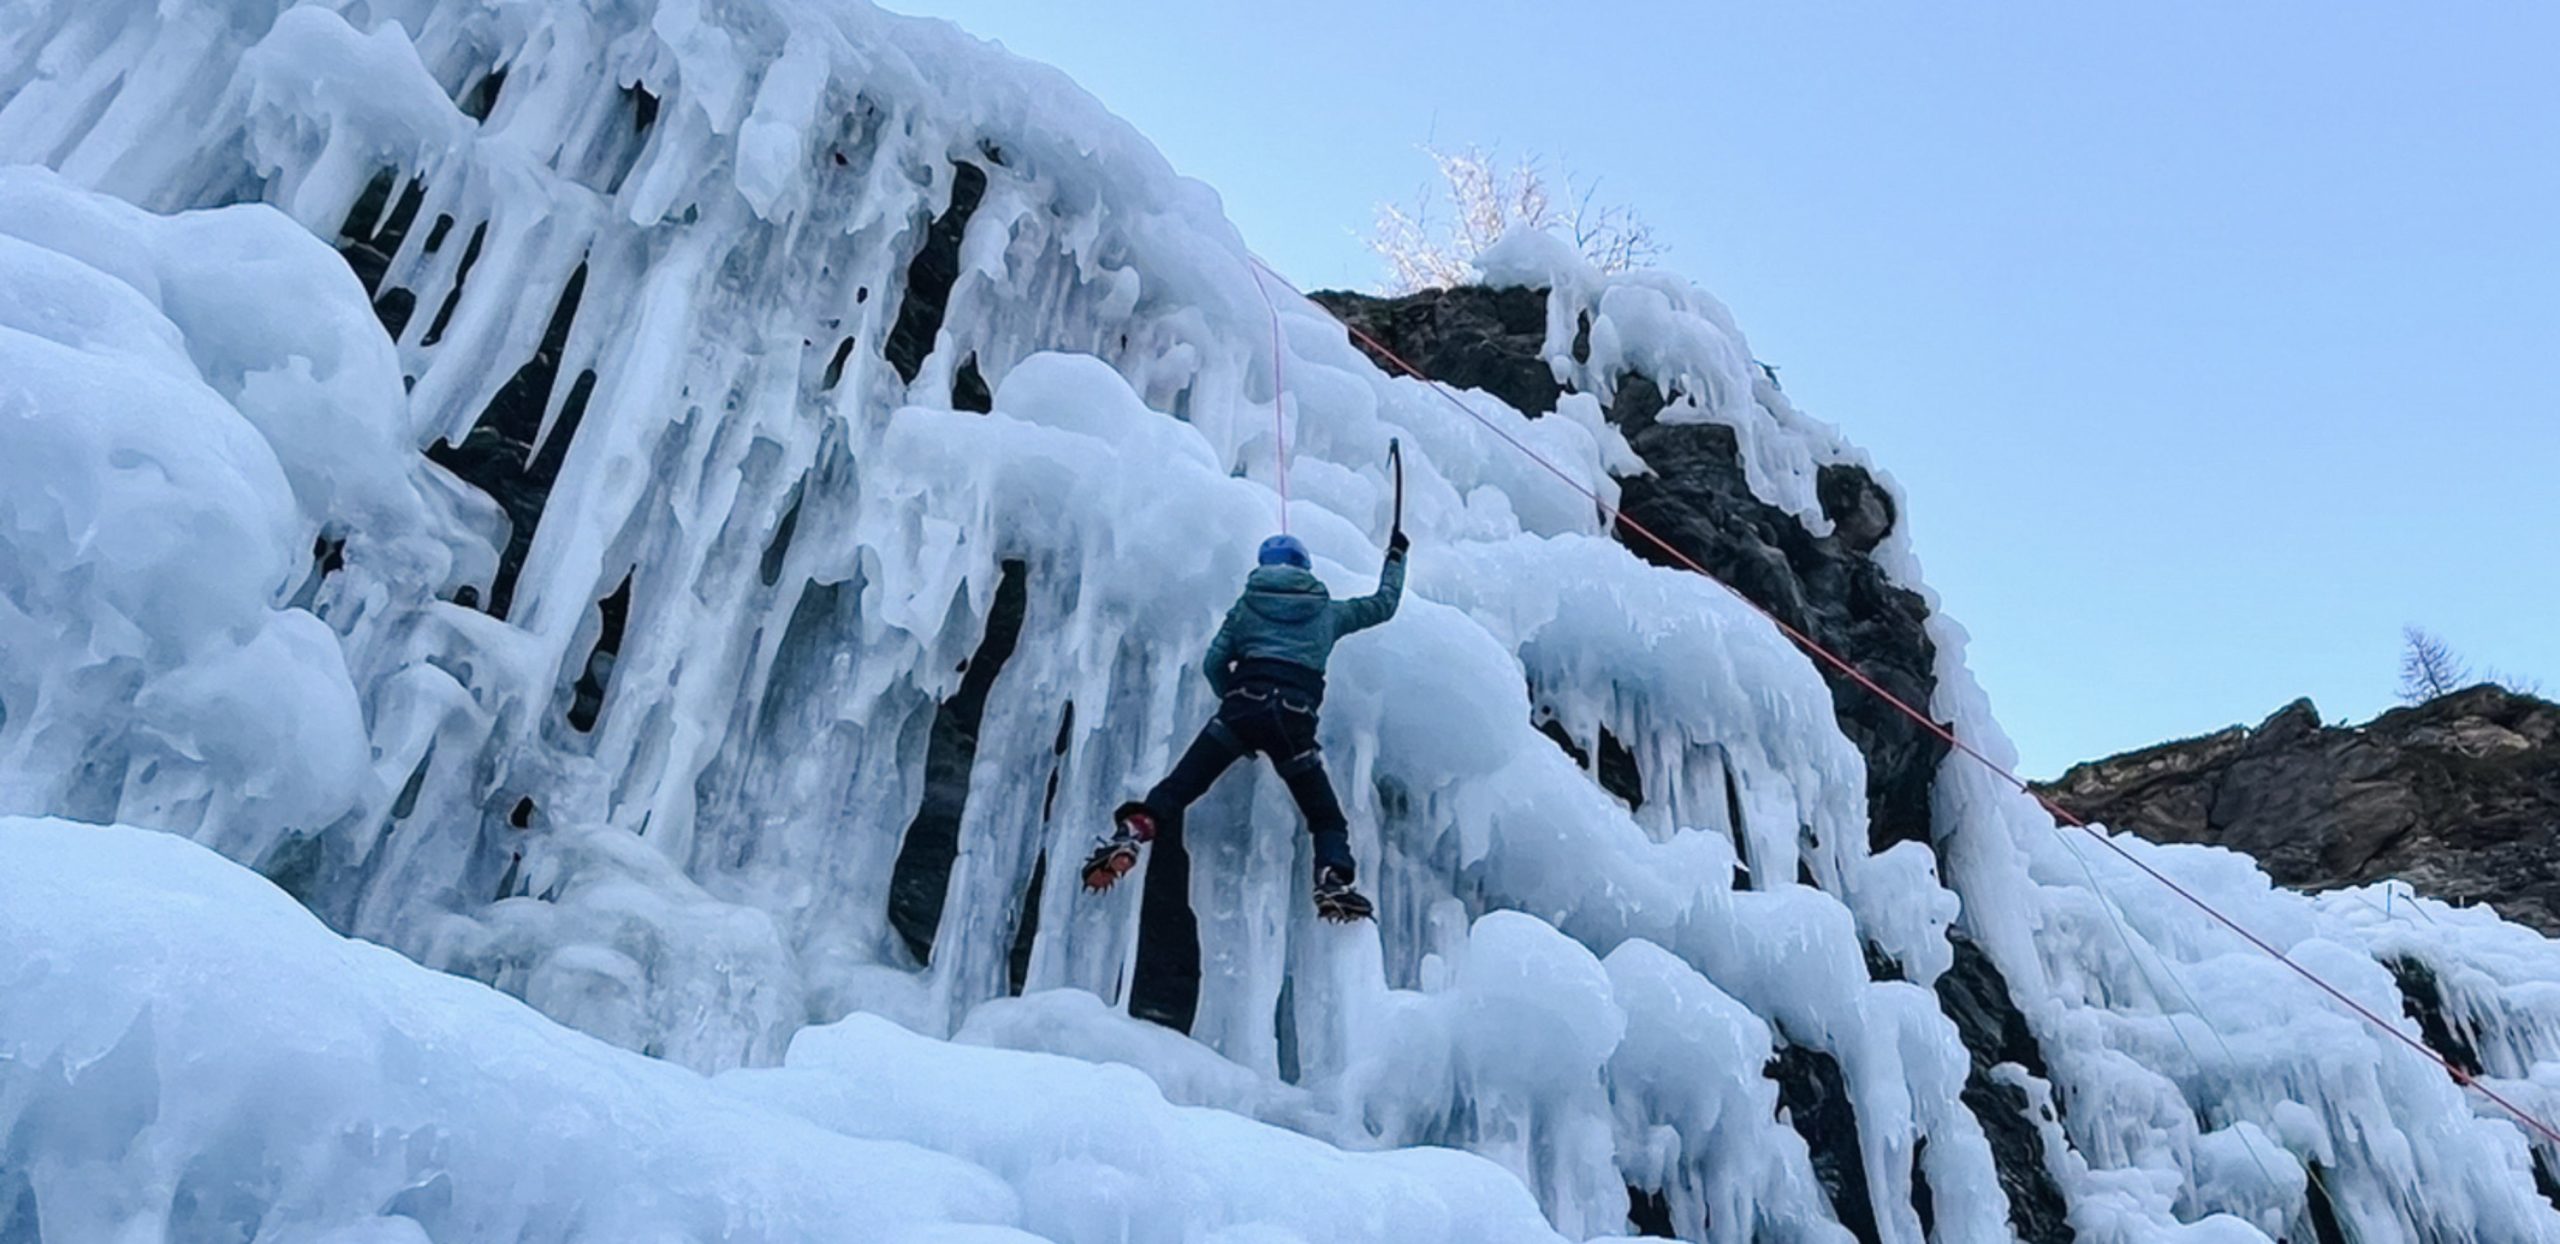 7 piolets pour la cascade de glace et l'alpinisme testés par la